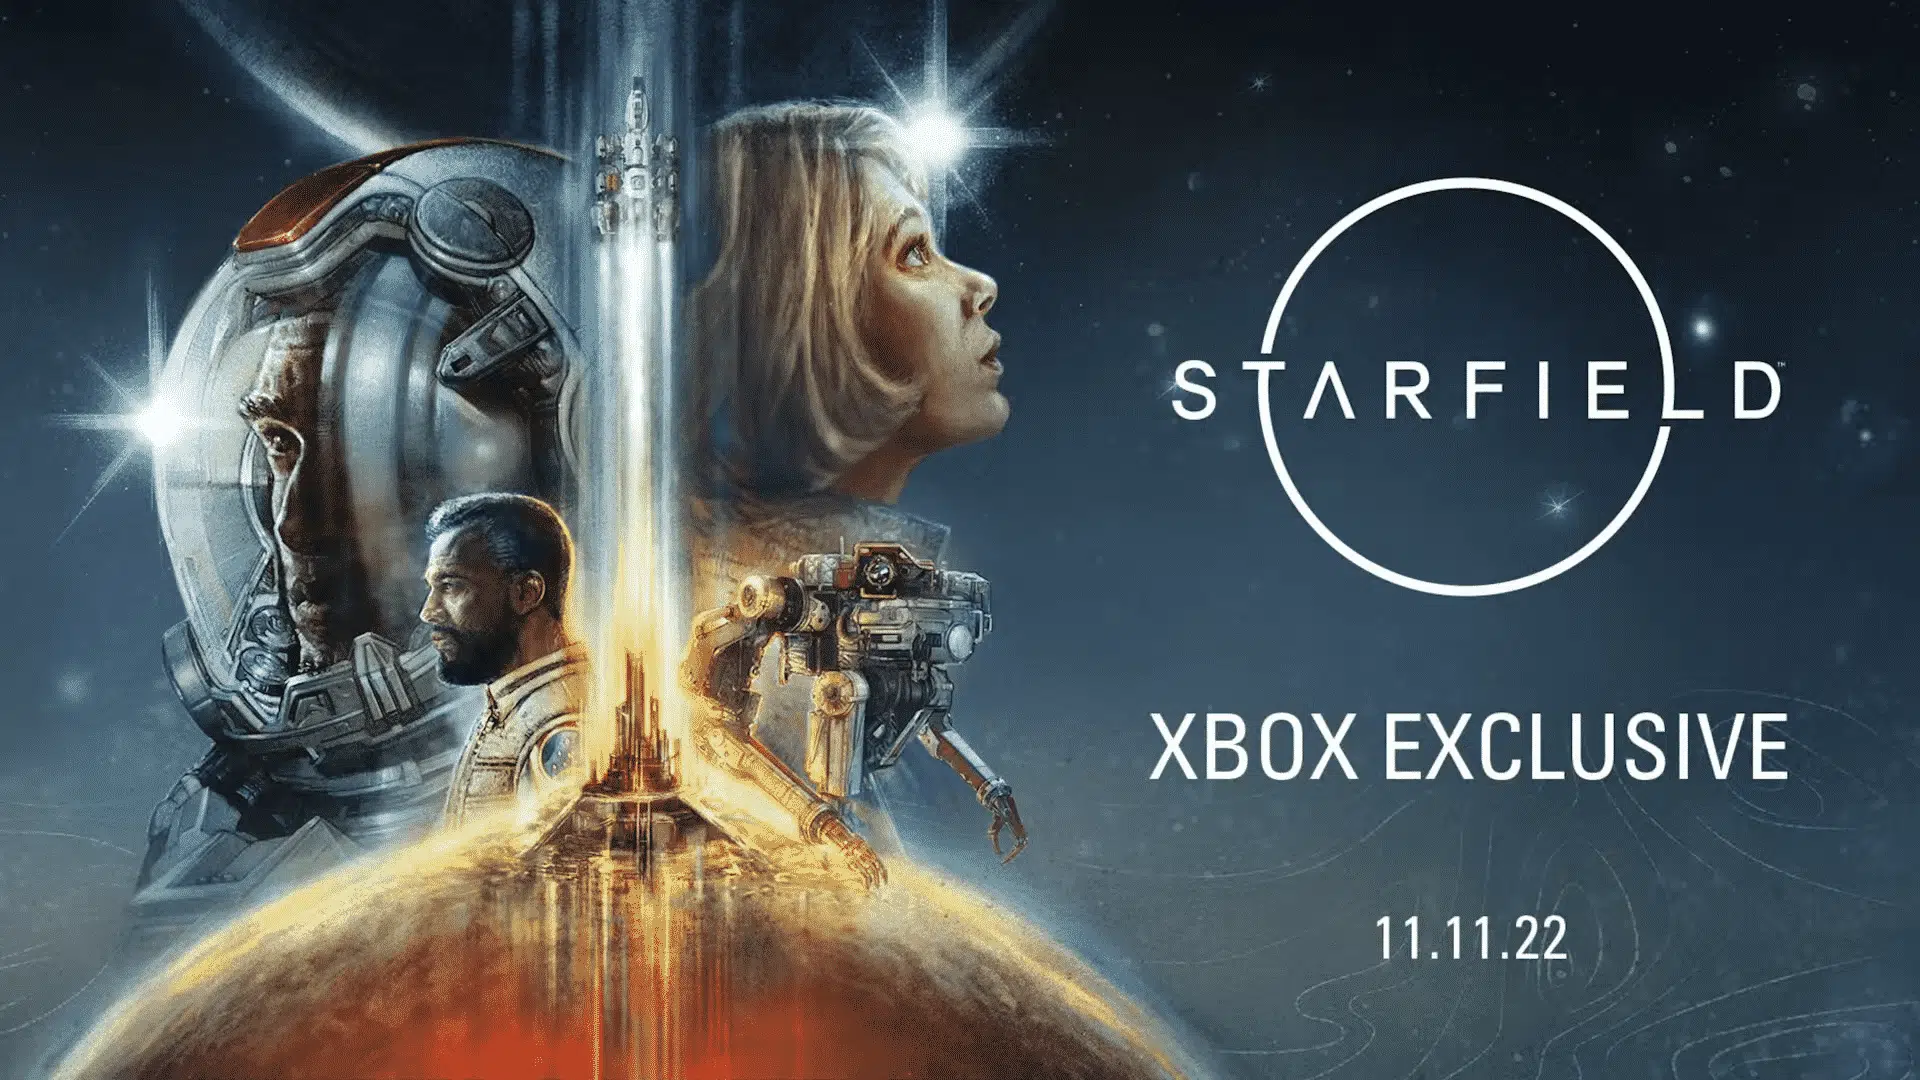 Xbox Bethesda Games E3 2021 Showcase Livestream 2 4 59 screenshot